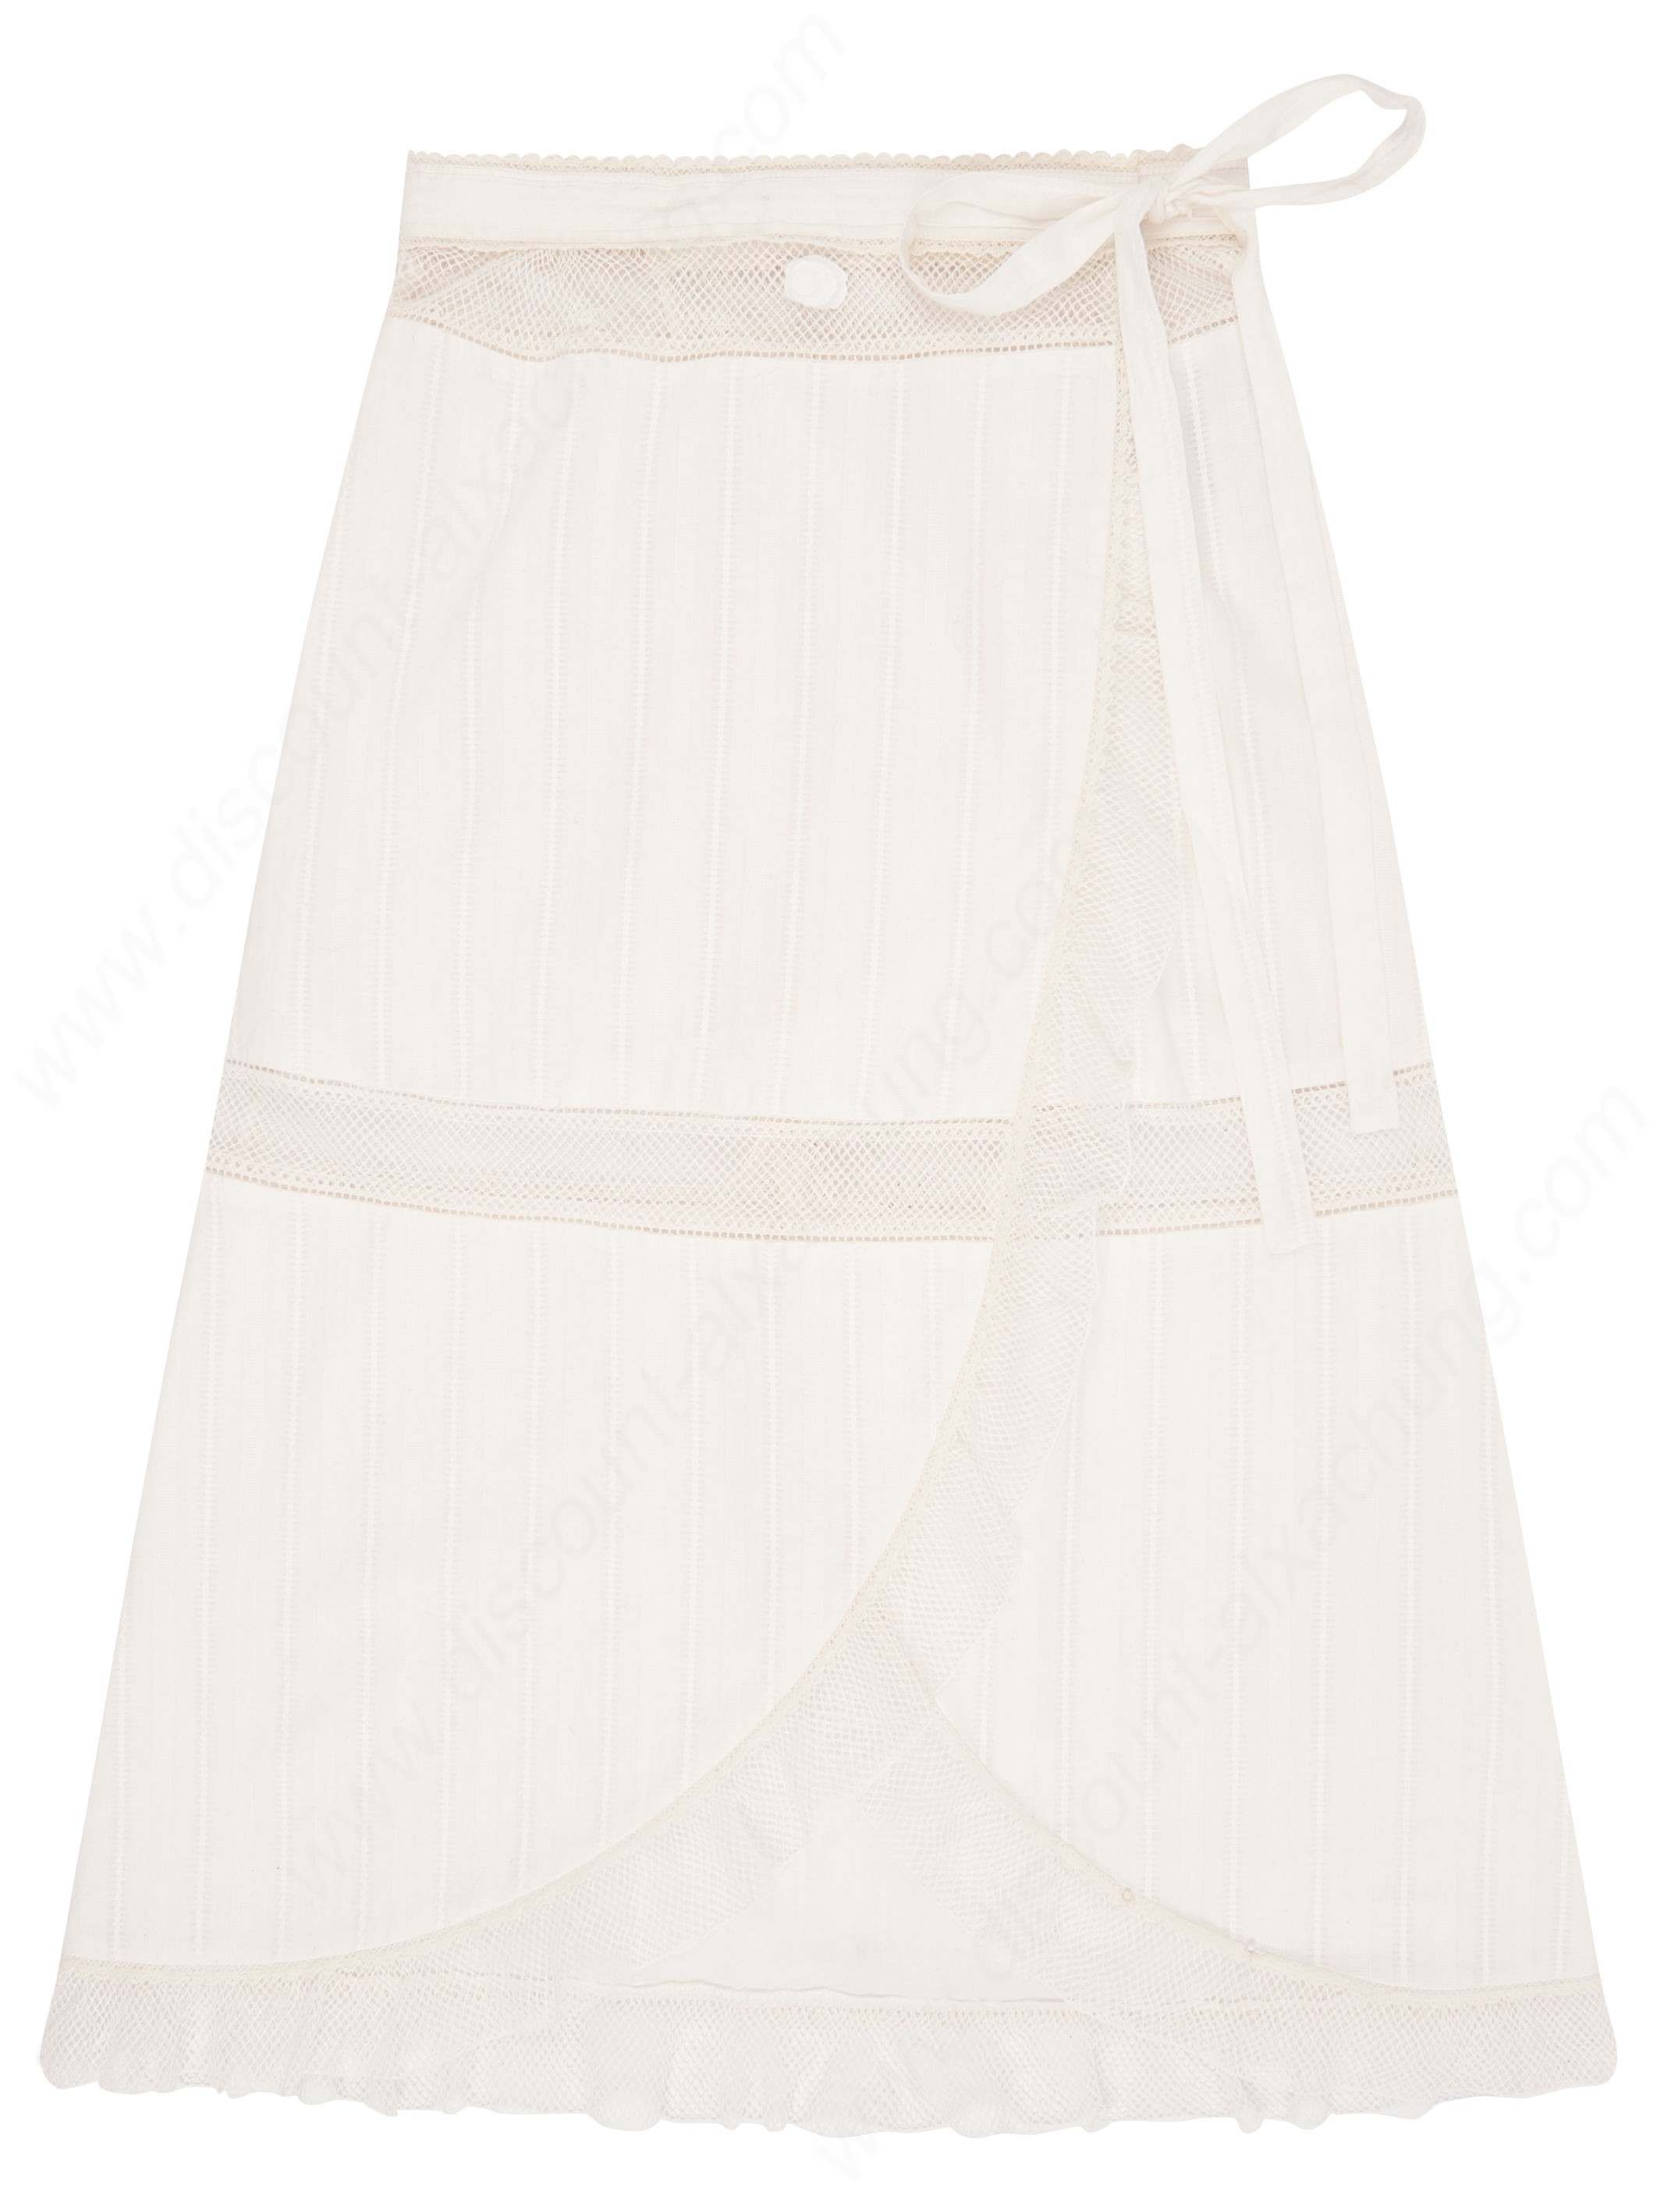 Alexachung Textured Wrap Skirt - Alexachung Textured Wrap Skirt